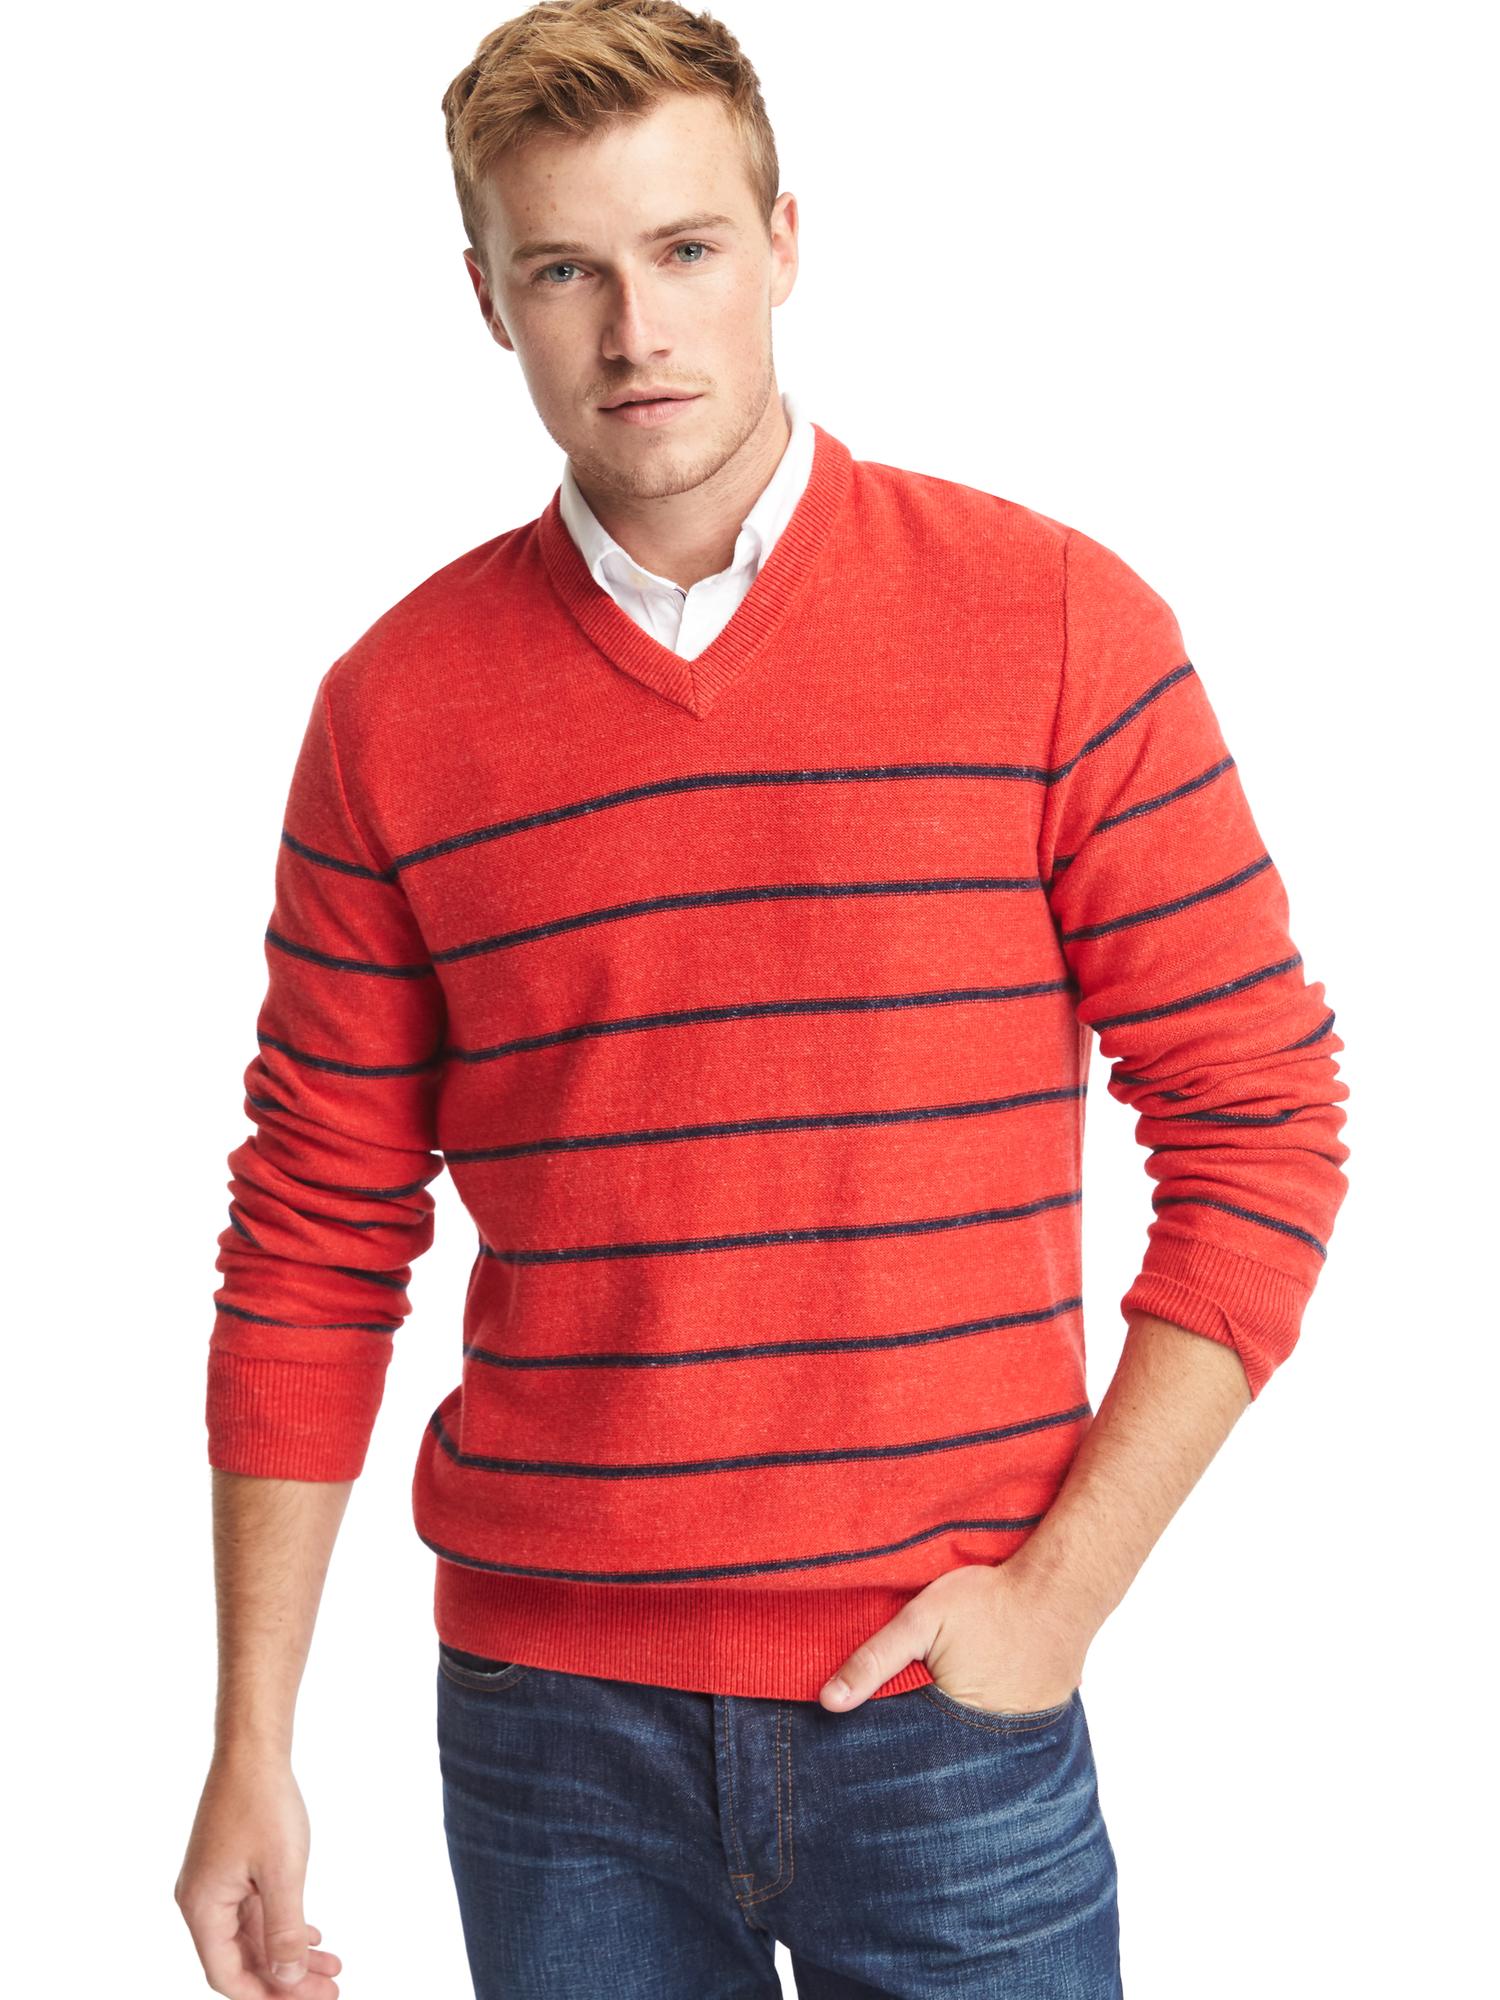 Stripe V-neck sweater | Gap